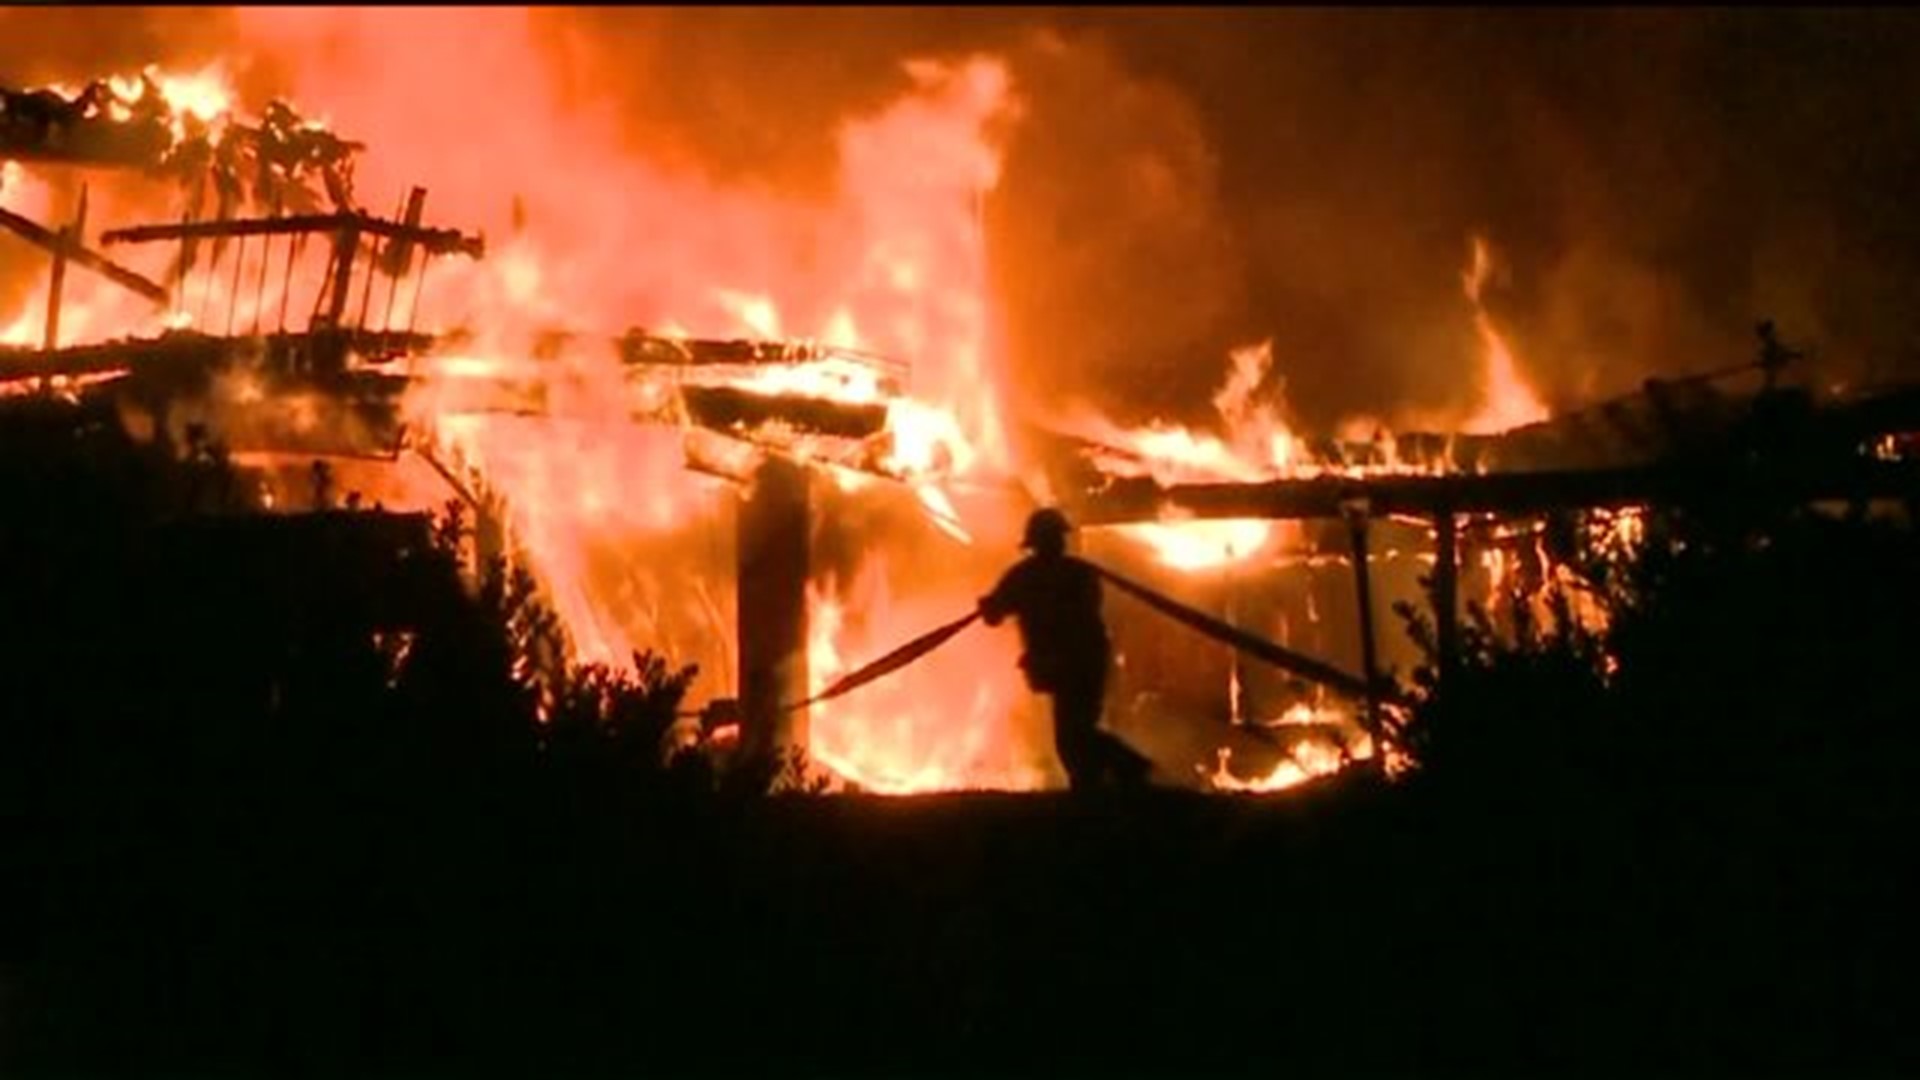 Residents Flee Inn During Blaze